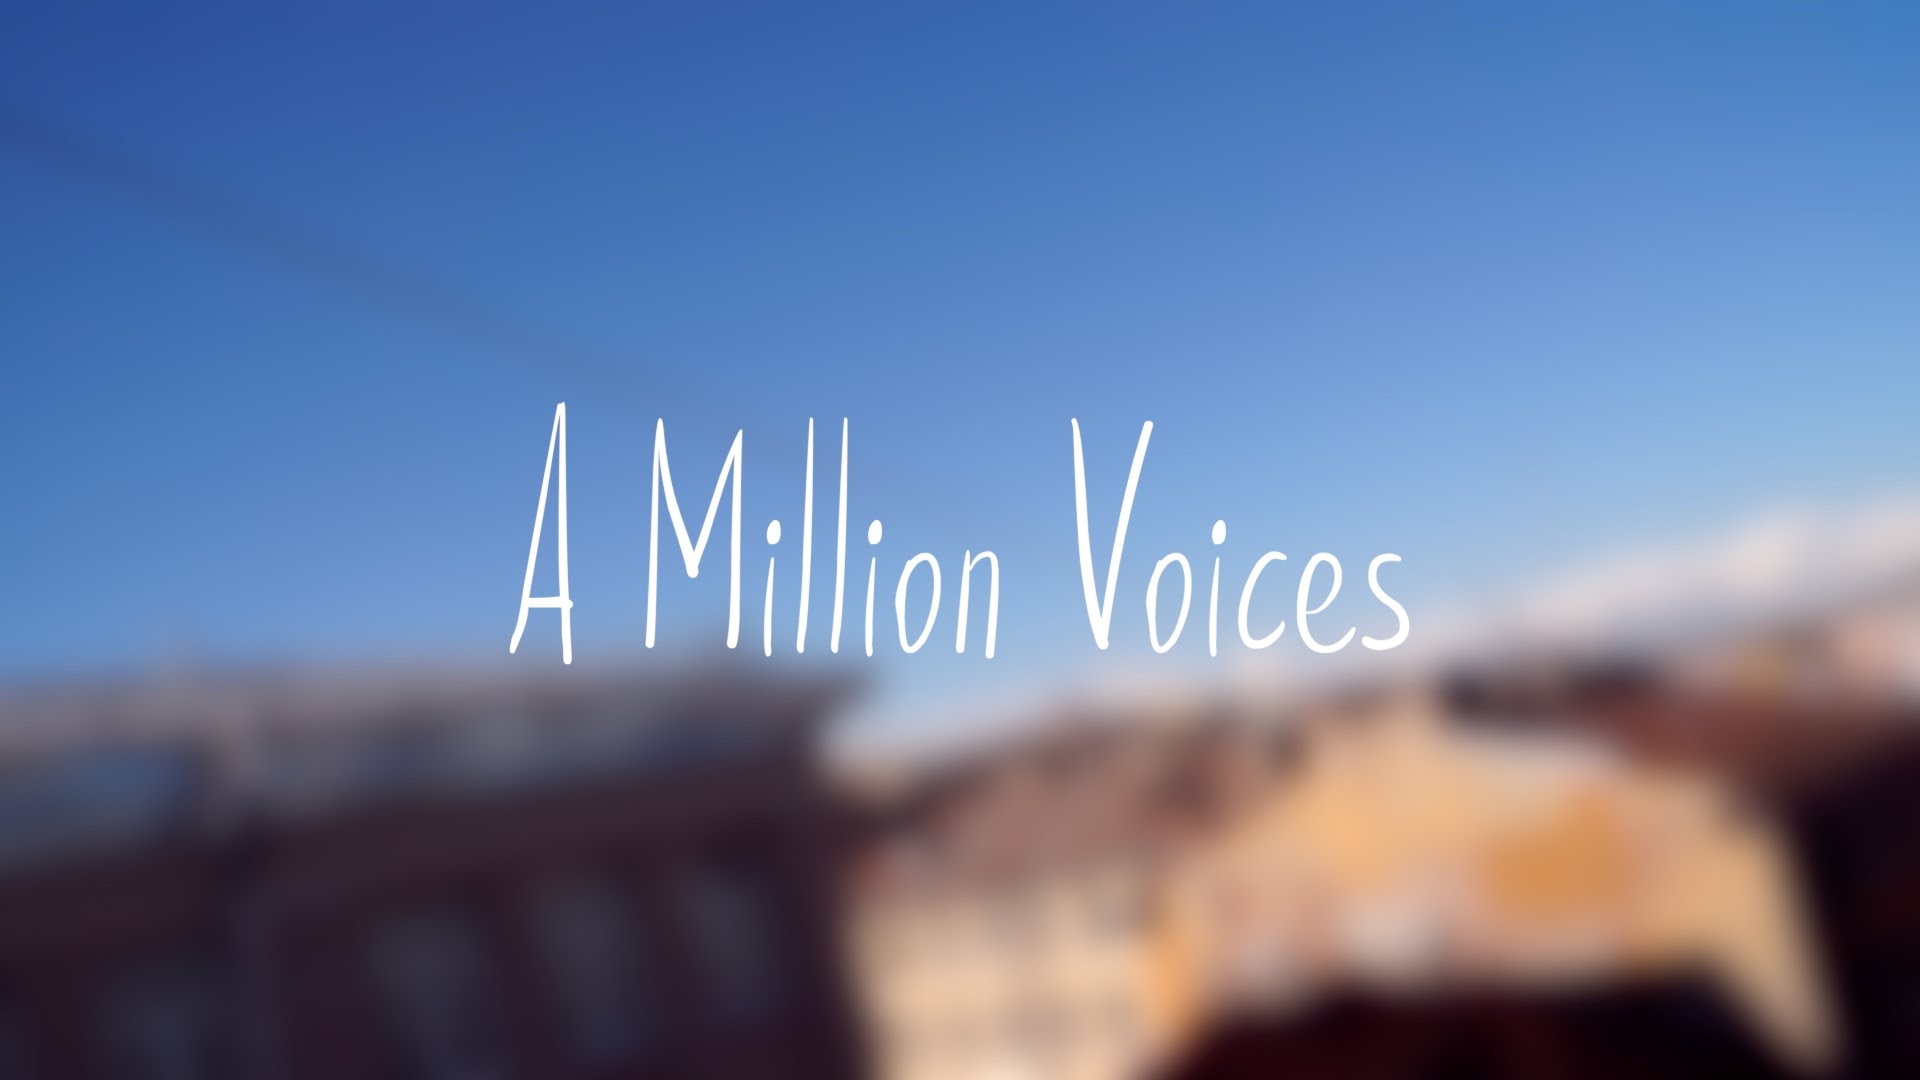 Гагариной a million voices. Гагарина million Voices. A million Voices обложка. Миллион голосов Гагарина обложка.